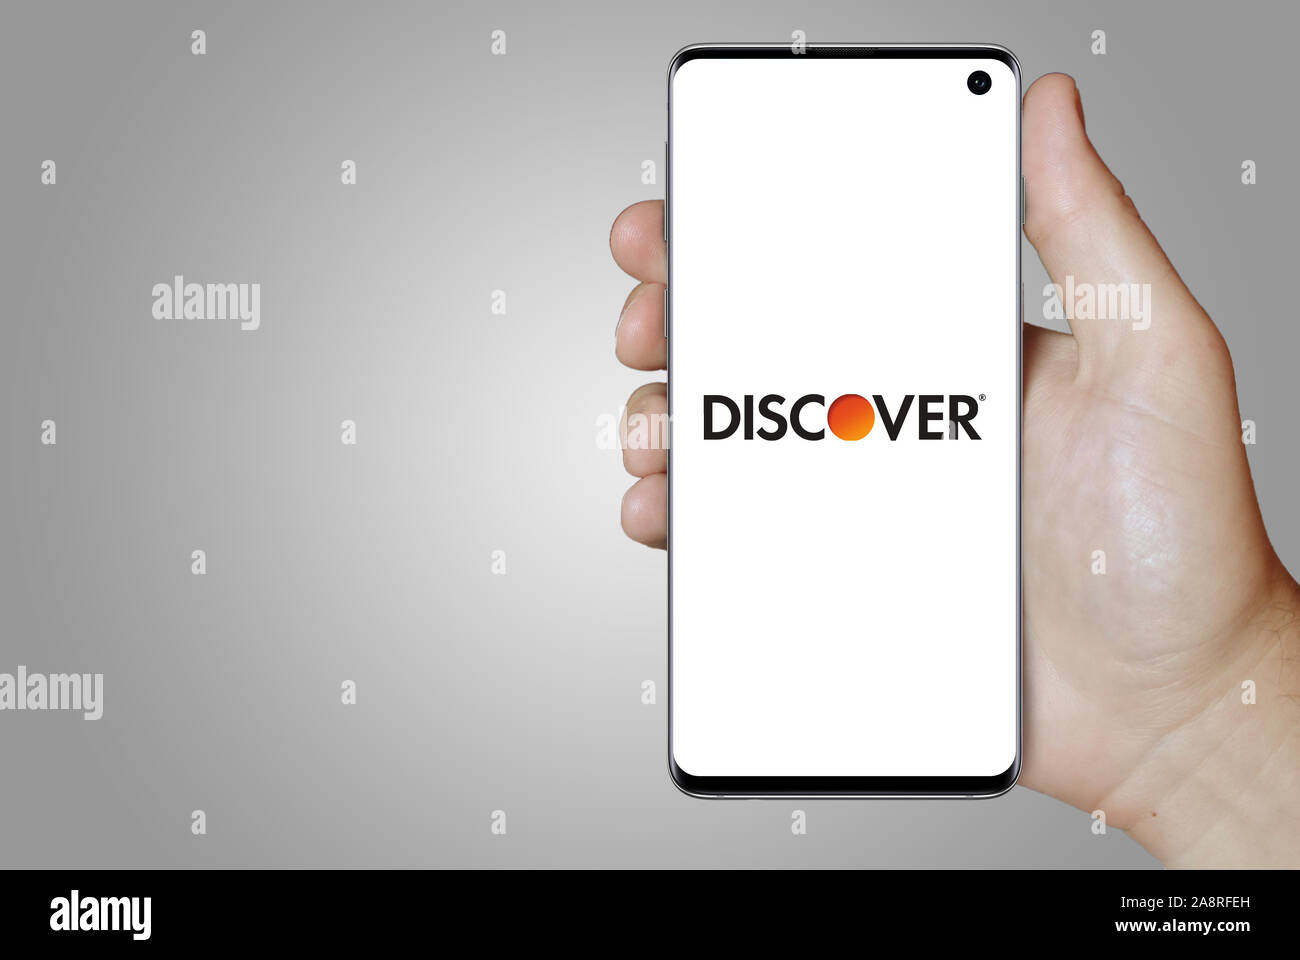 Logo der öffentlichen Unternehmen Discover Financial Services angezeigt auf einem Smartphone. Grauer Hintergrund. Credit: PIXDUCE Stockfoto